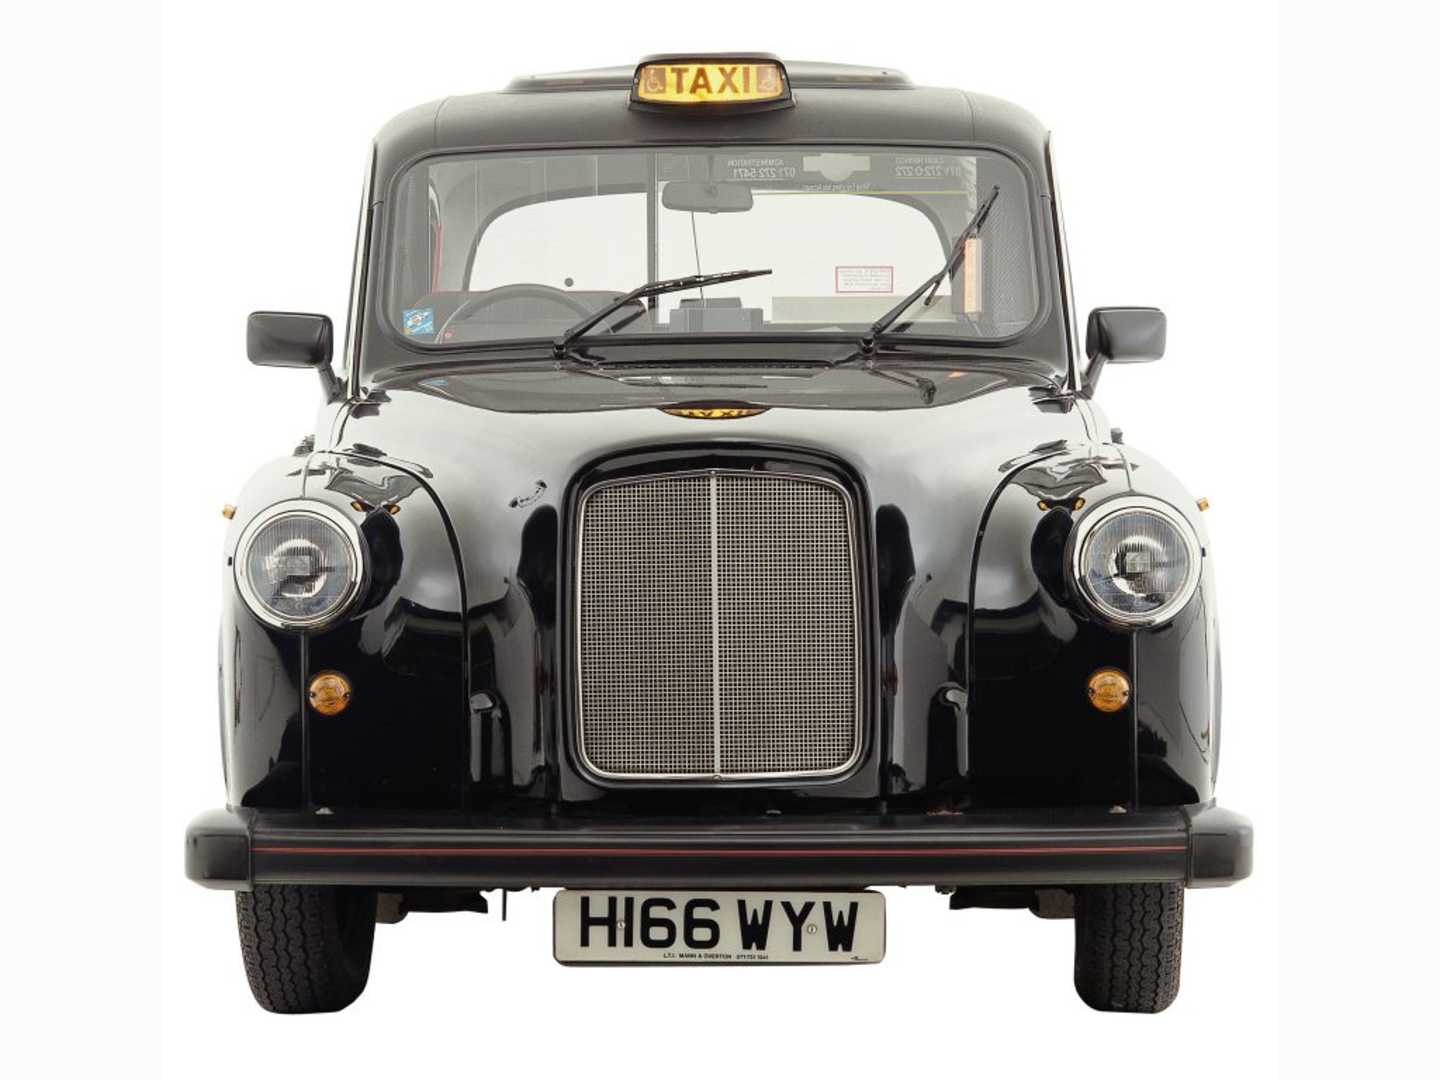 Le FX4, qui datait de 1948, fut fabriqué à Coventry jusque dans les années 80 !